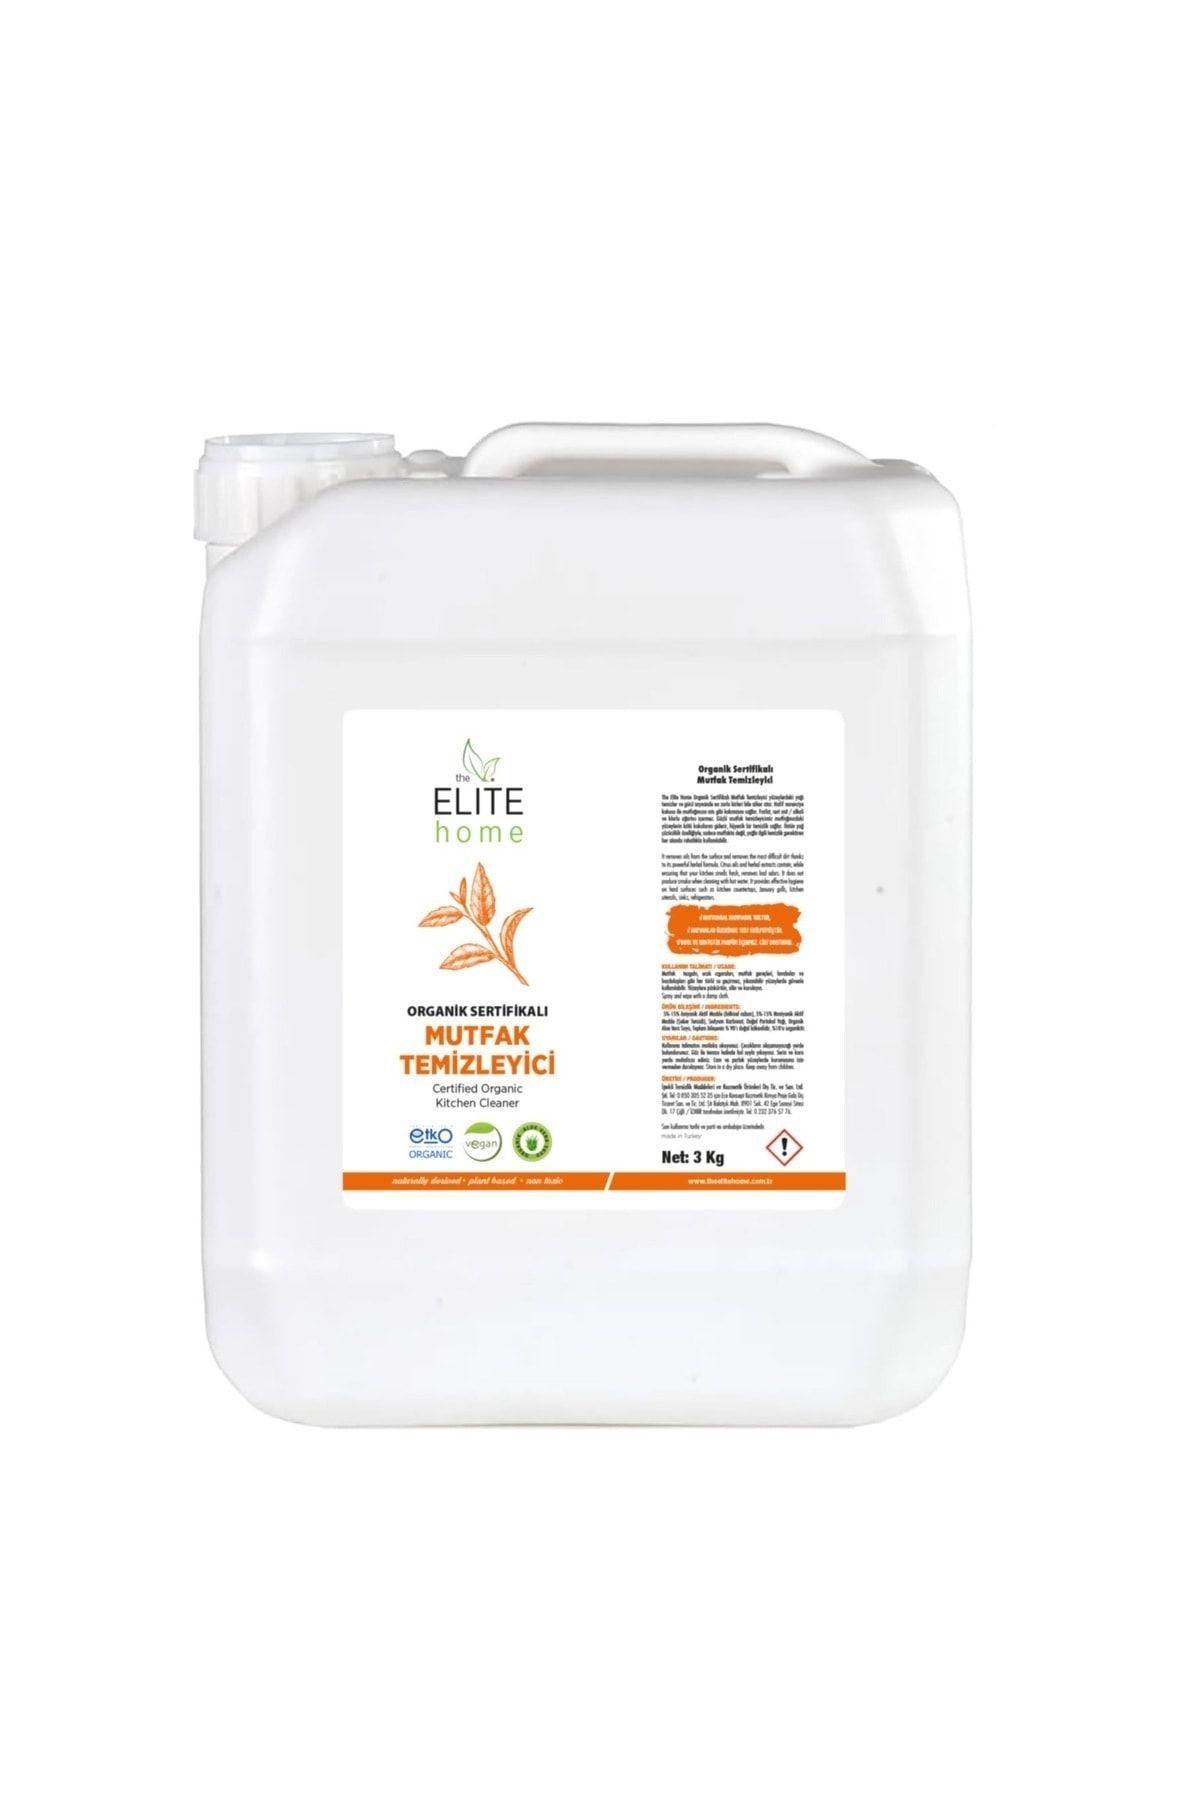 The Elite Home Organik Sertifikalı Mutfak Temizleyici 3 kg portakal kokulu